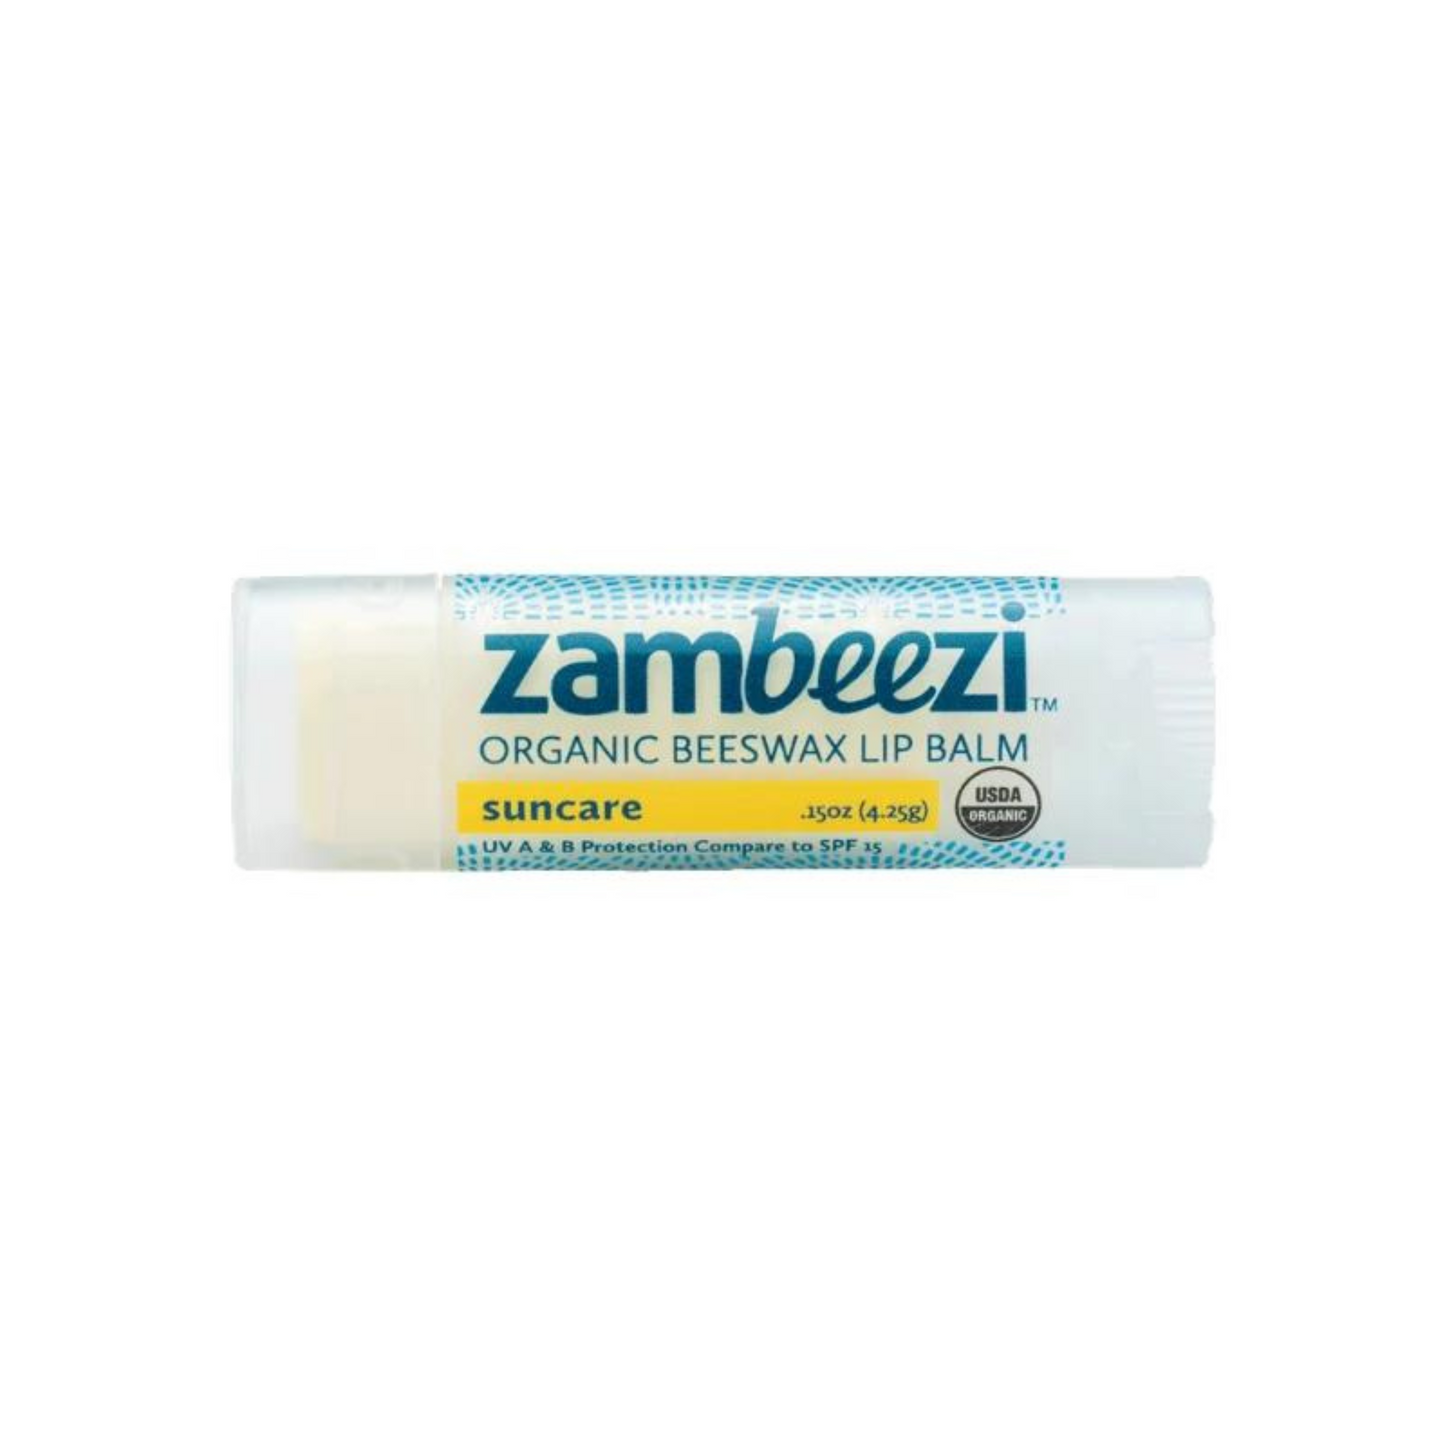 Primary Image ofZambeezi Organic Suncare Lip Balm (0.15 oz)